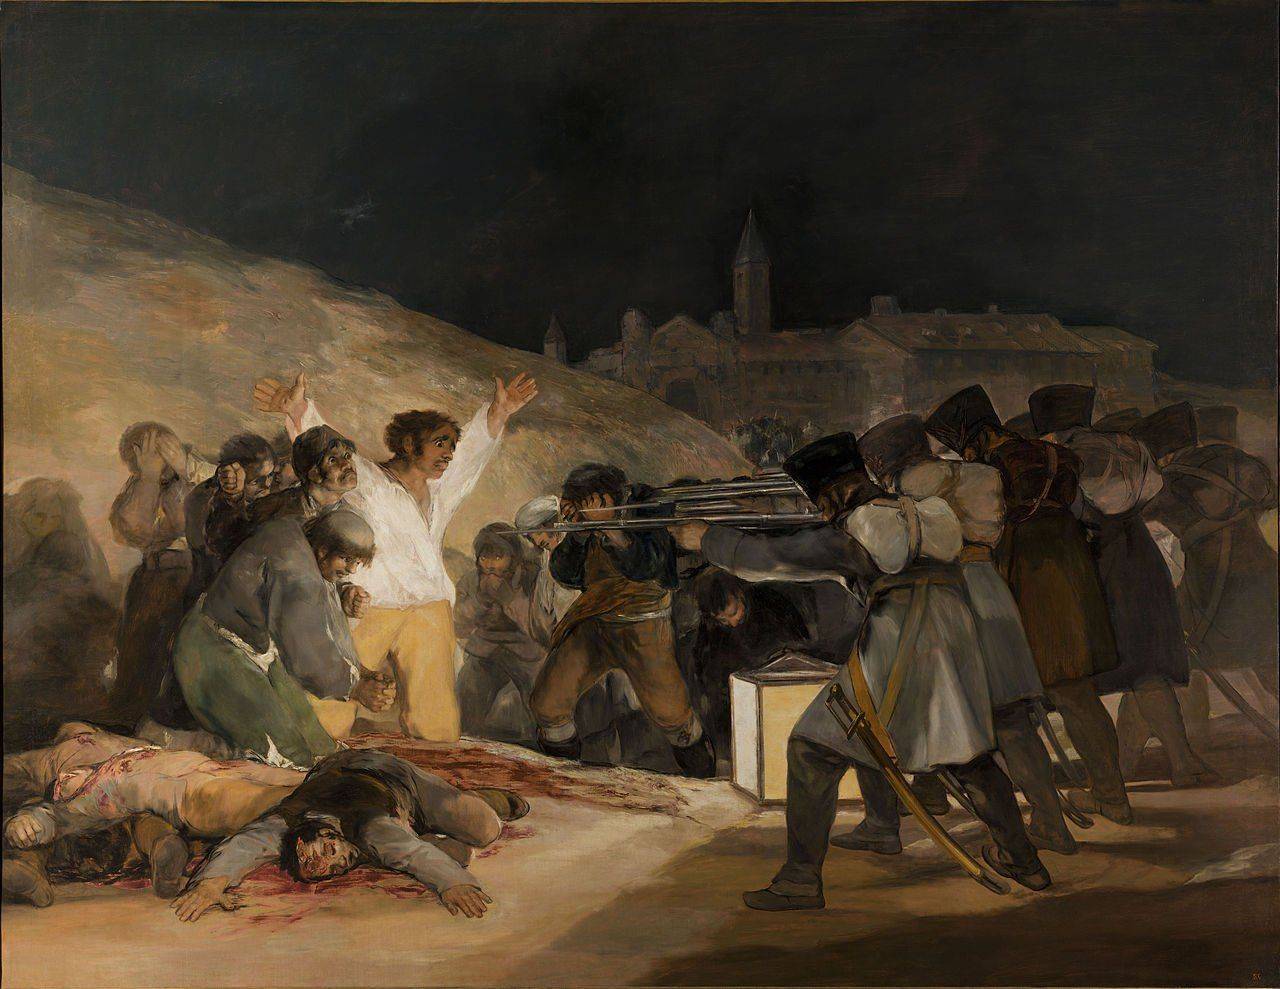 by_Francisco_de_Goya,_from_Prado_thin_black_margin.jpg